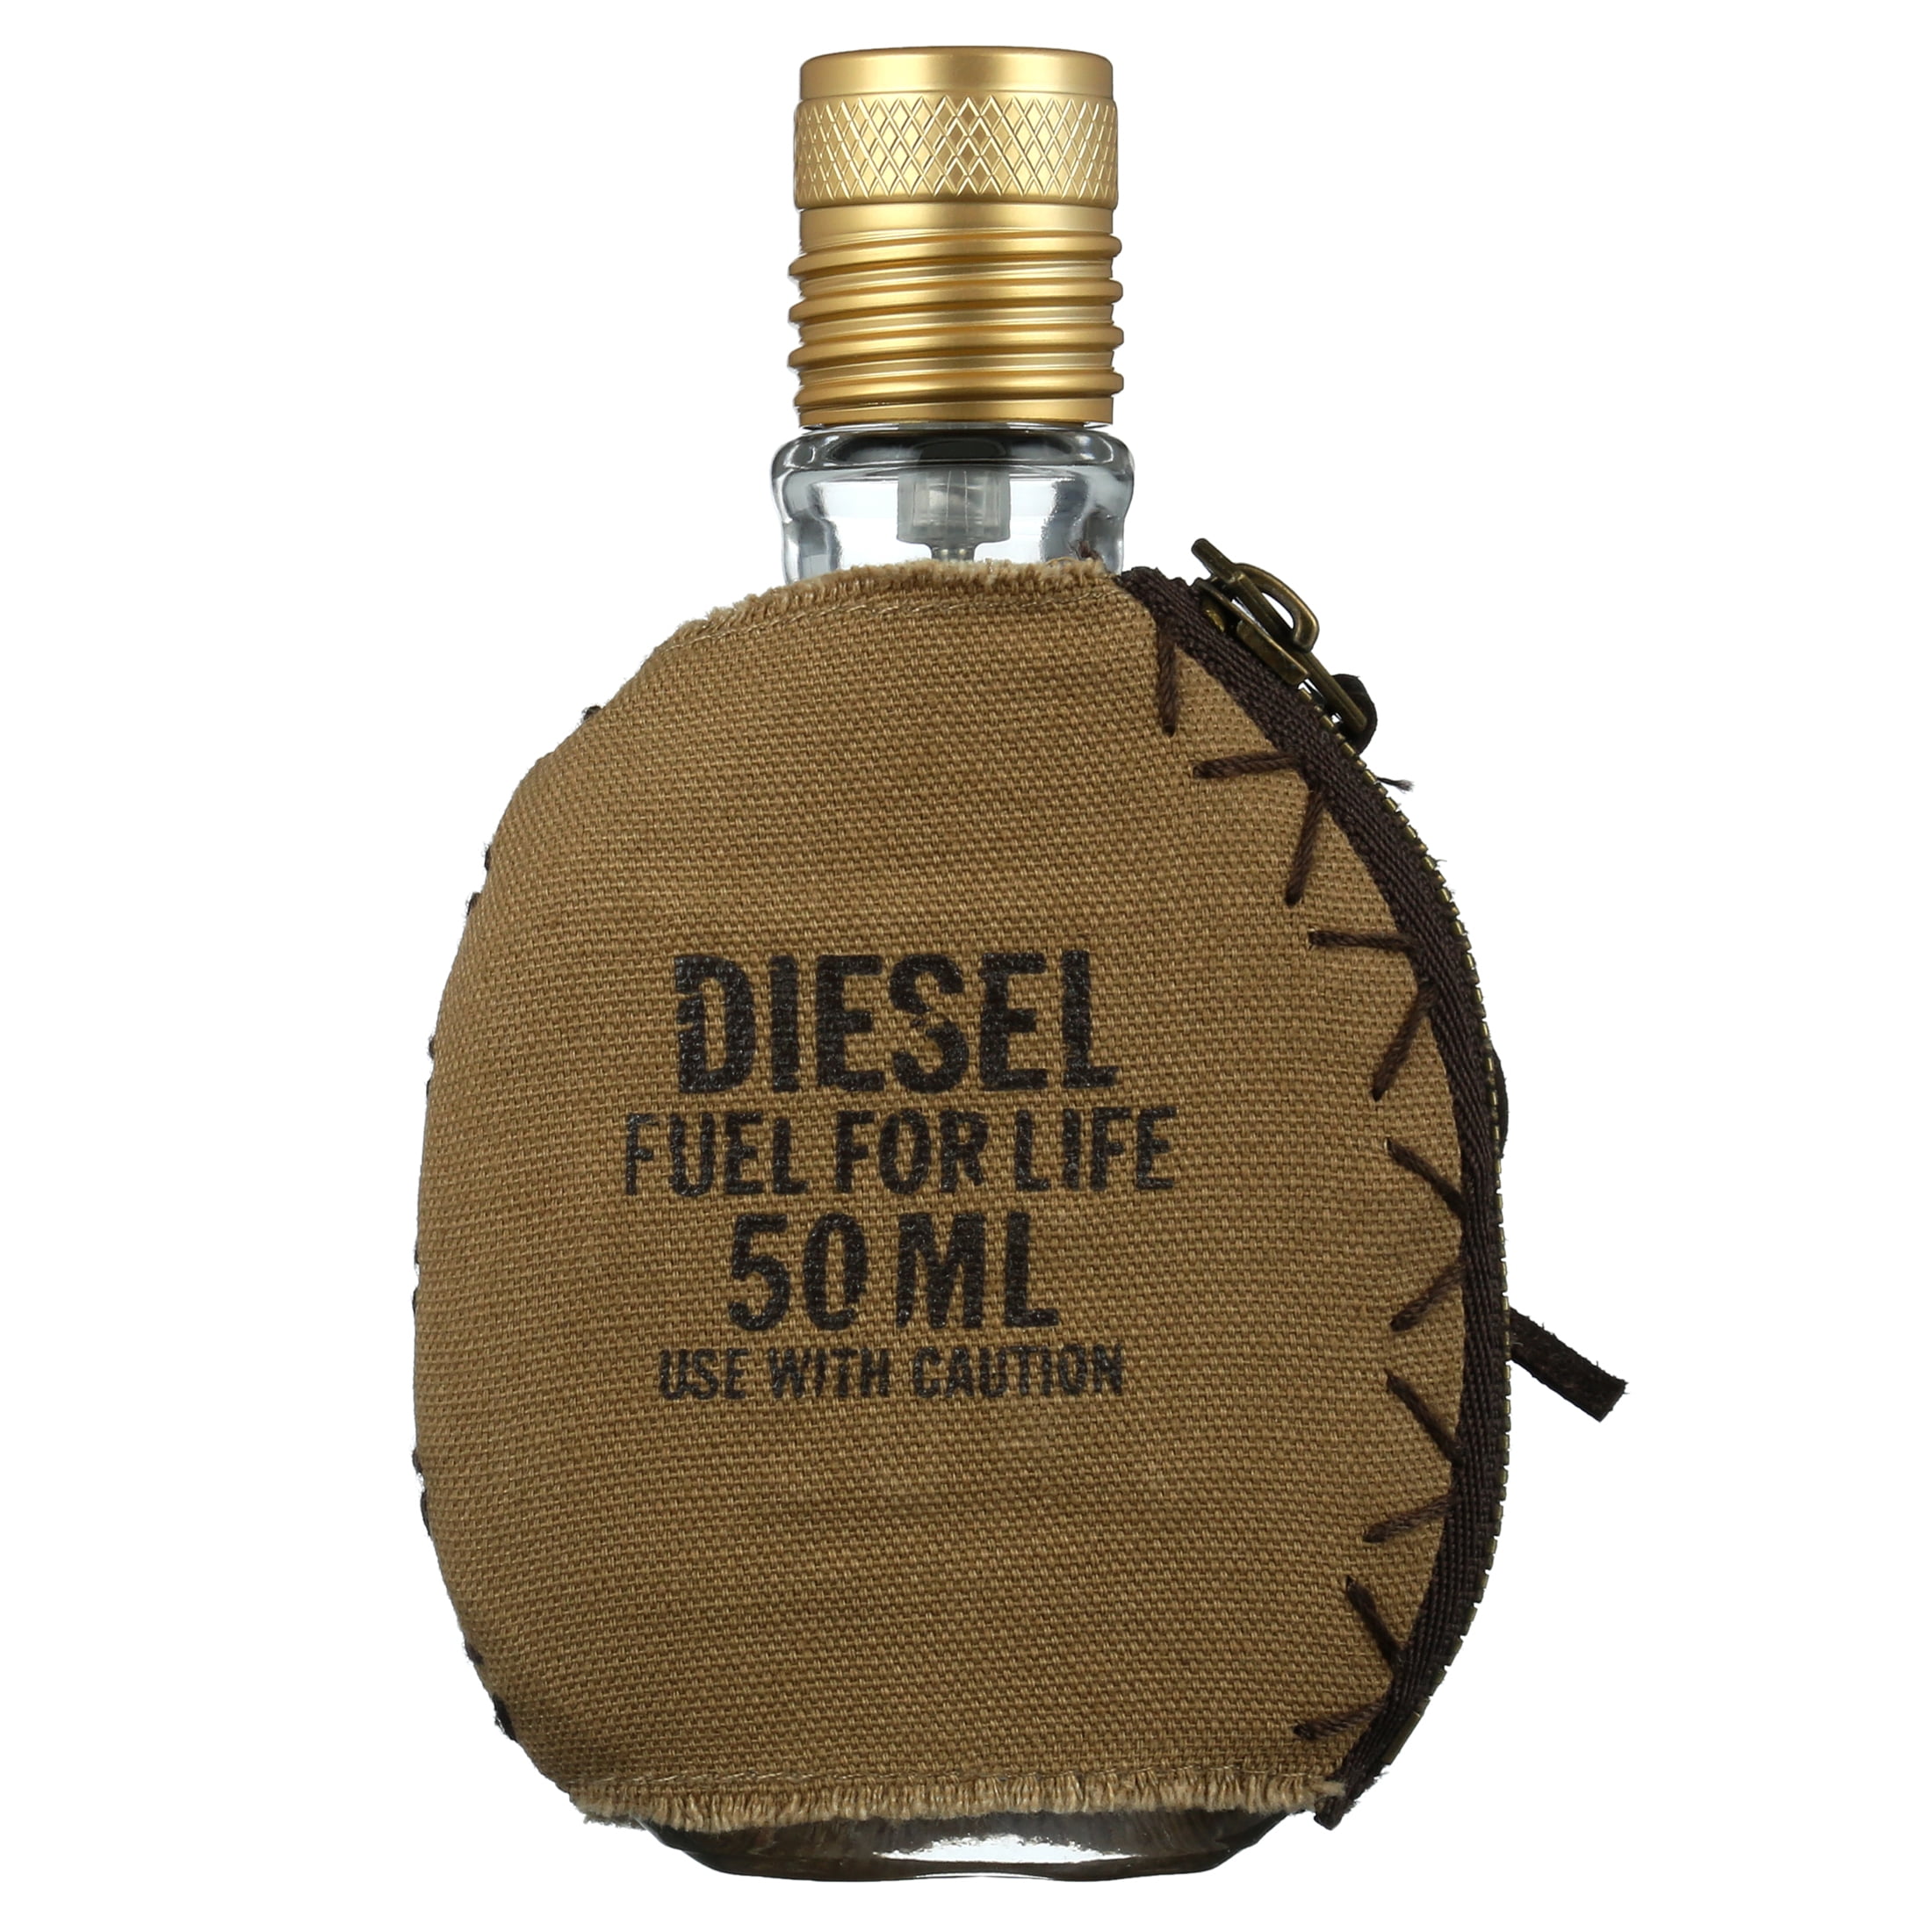 Diesel Fuel for Life Pour Elle, Eau de Parfum en Spray Vaporisateur, Parfum  Sensuel, 50 ml MP00622 - Sodishop